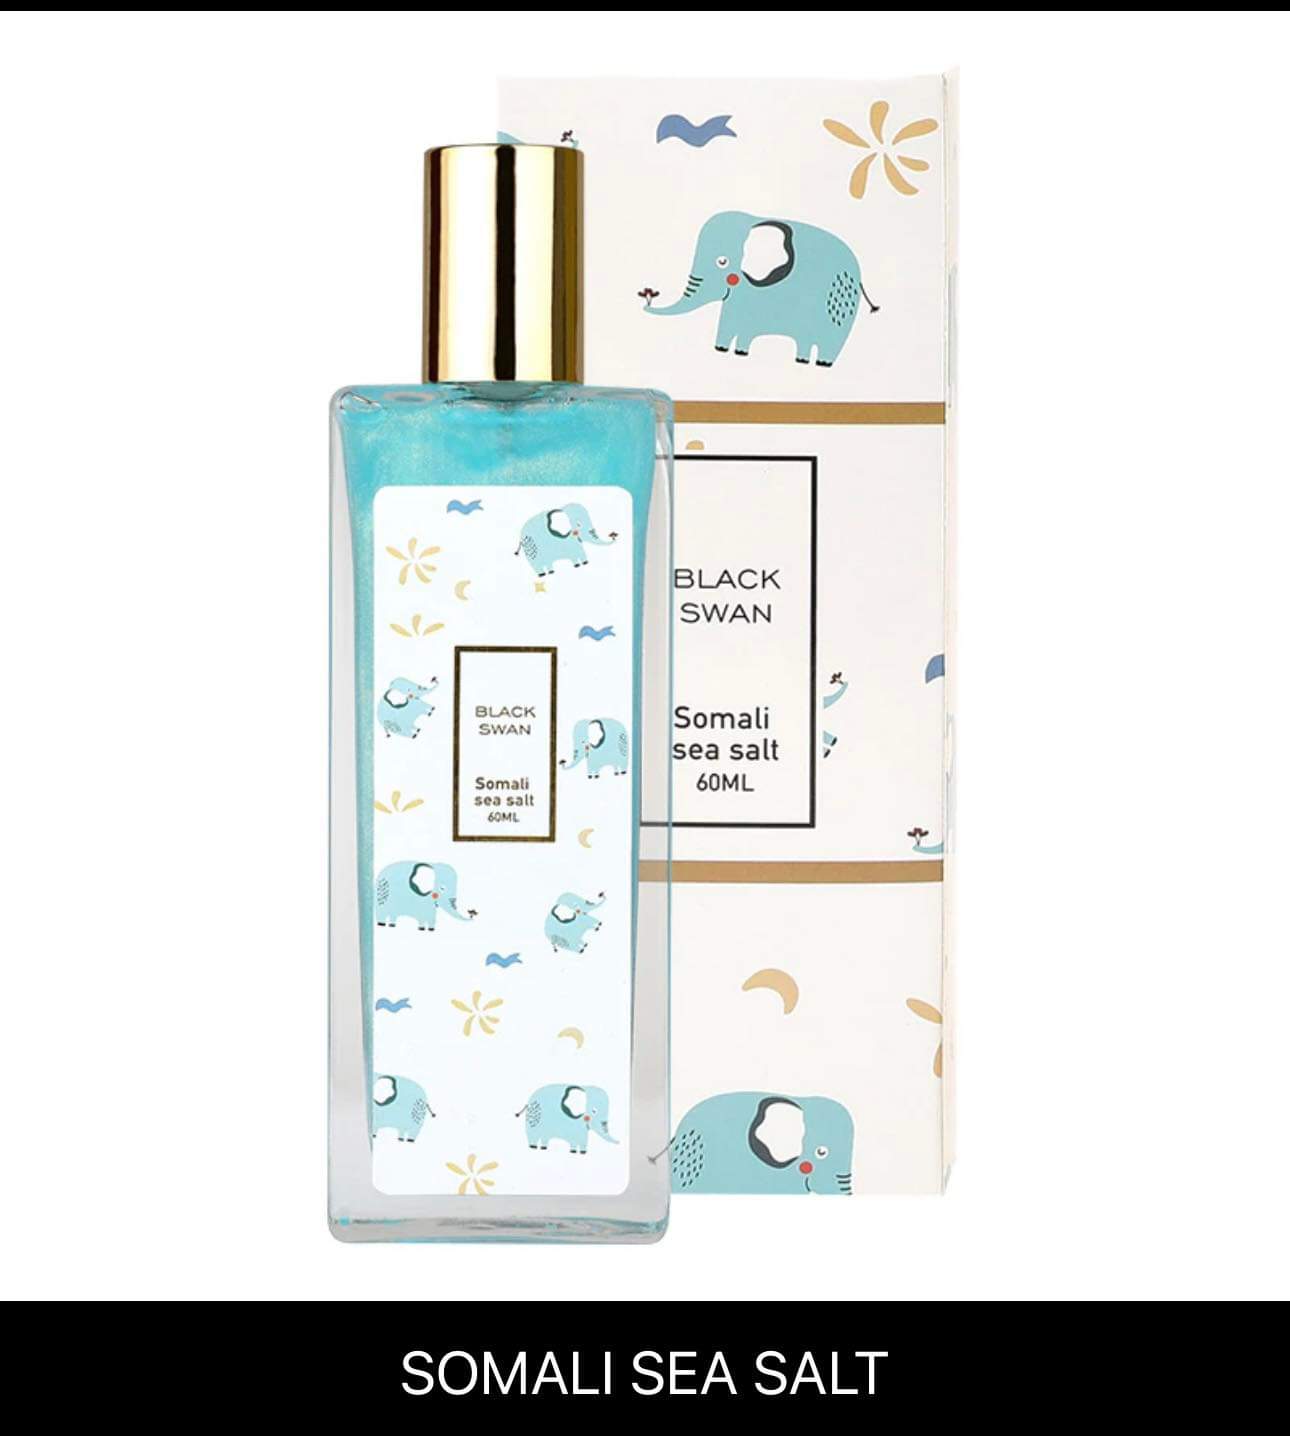 Z16 - BlackSwan Colorful Shimmer Body Mist Perfume 60ml For Men Women gift